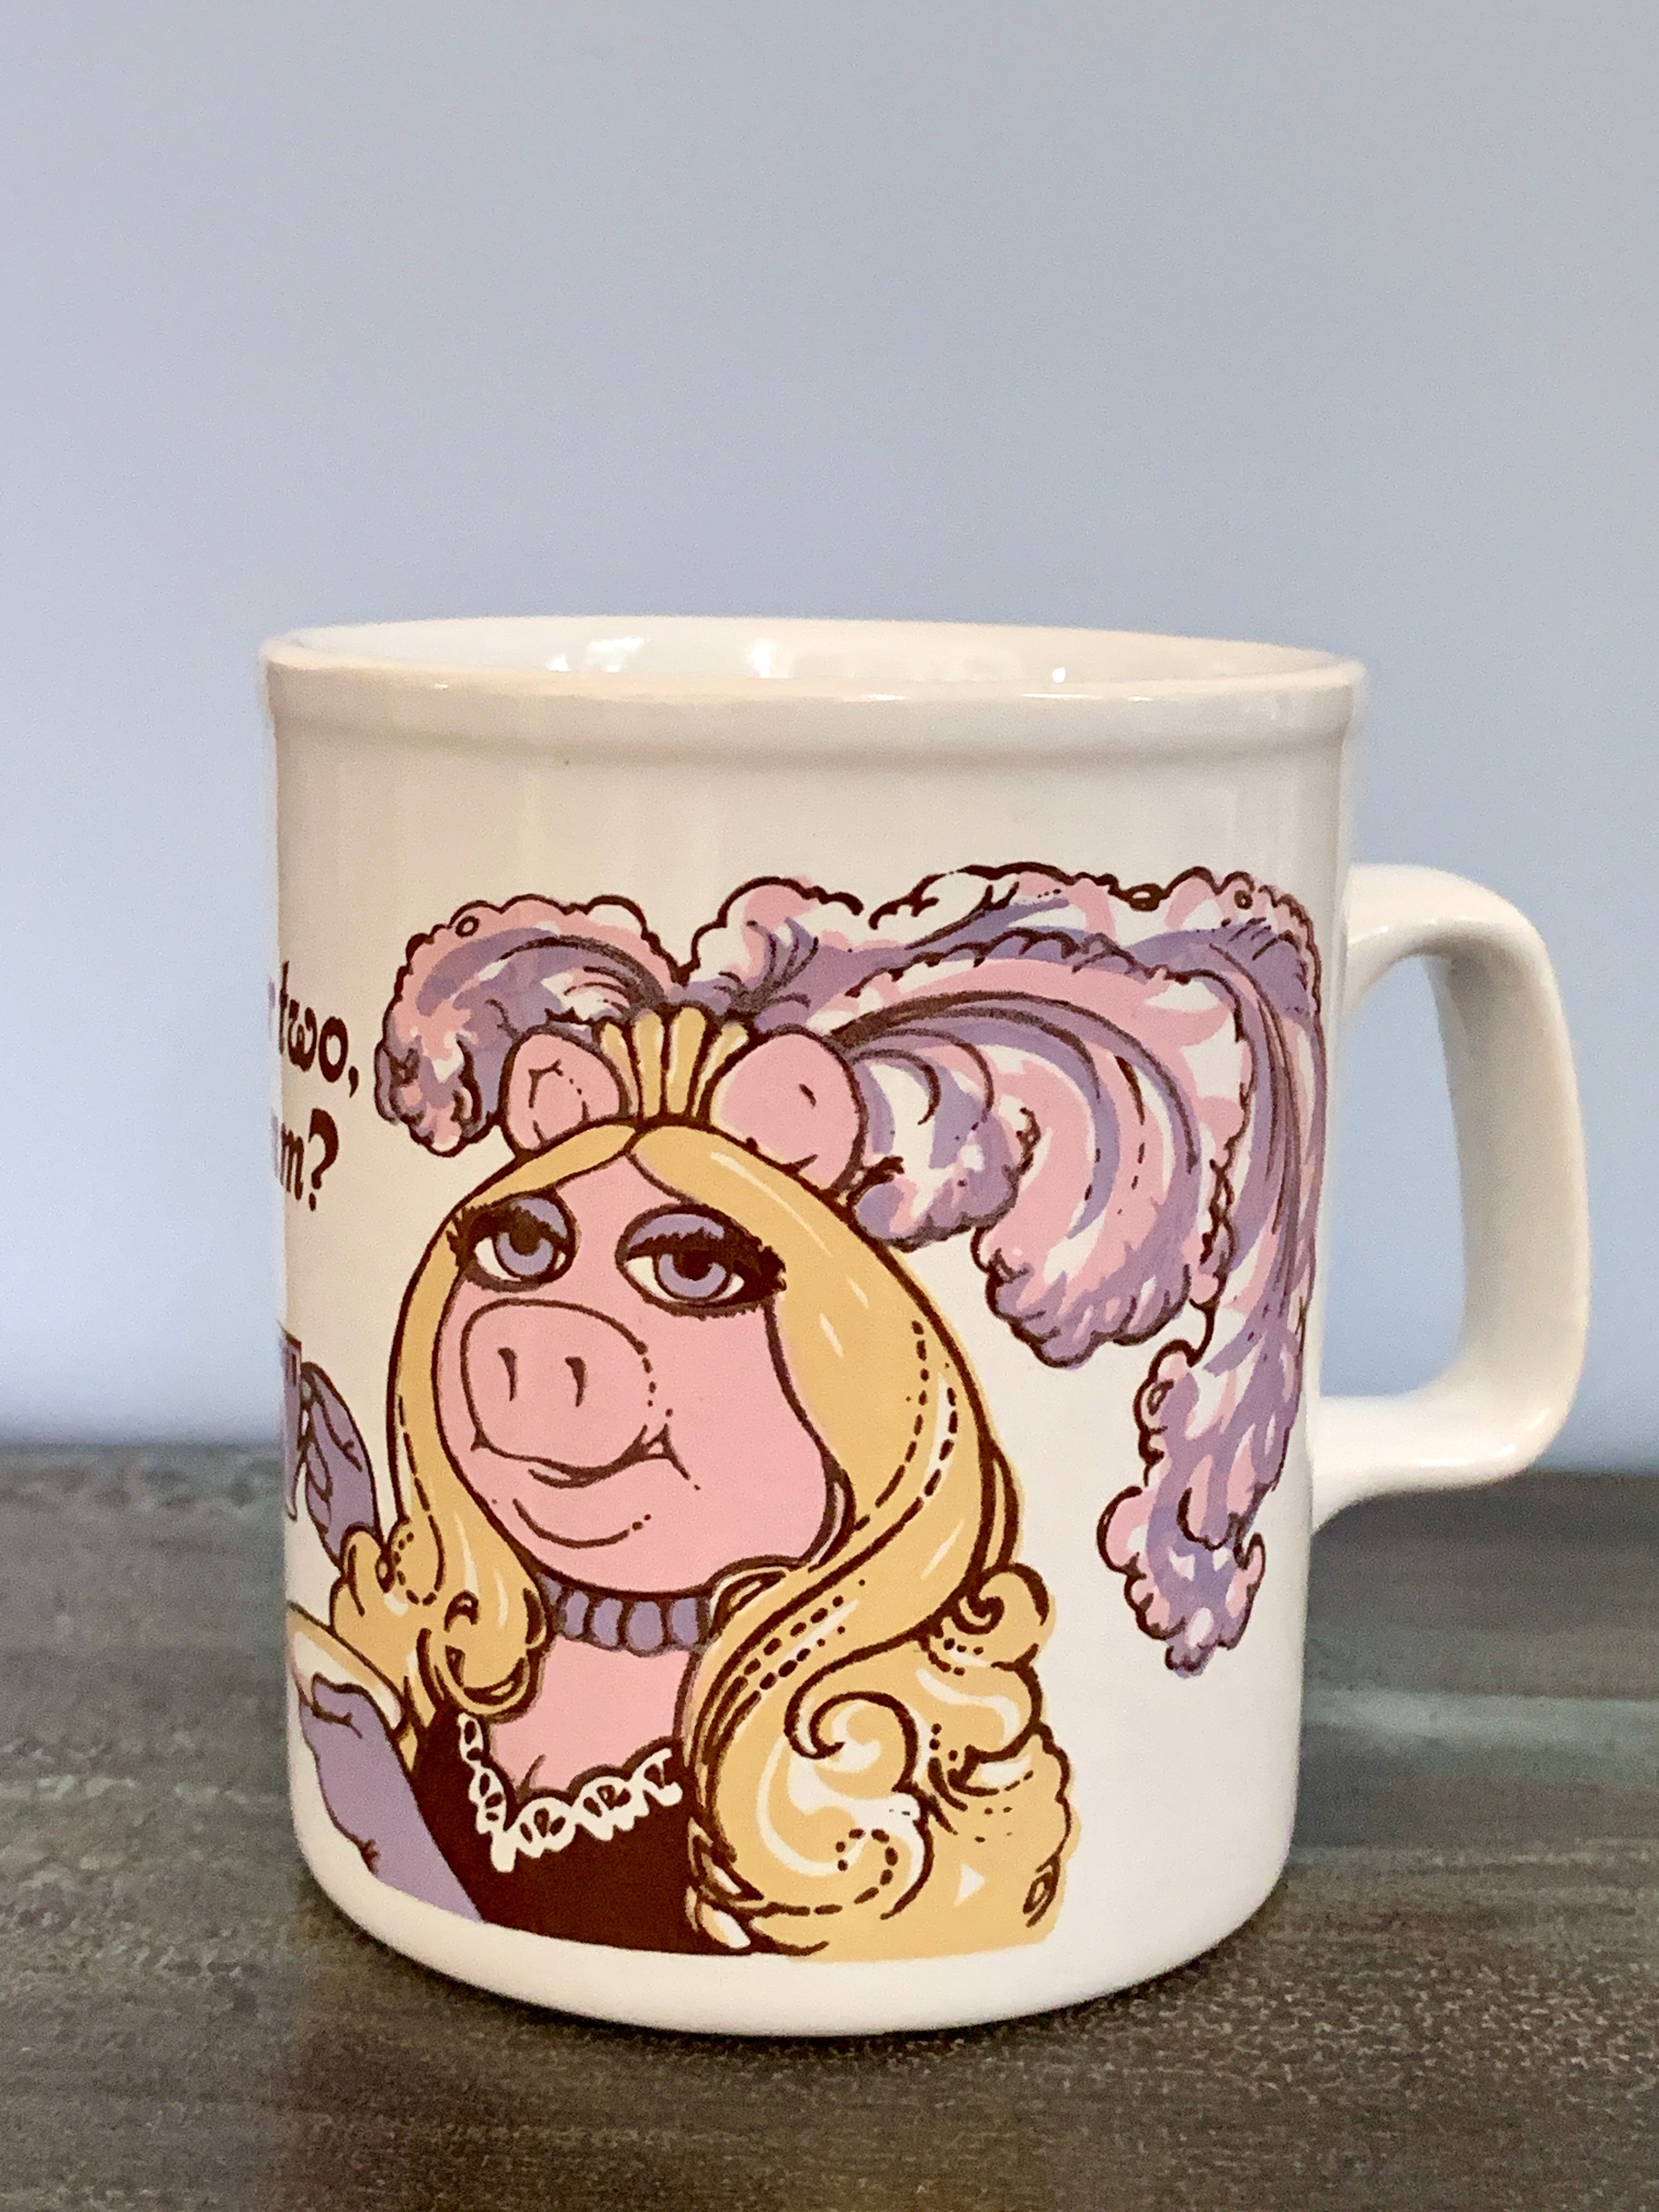 Kiln Craft Vintage Miss Piggy Mug; 1980 "Tea for Two Hmm?